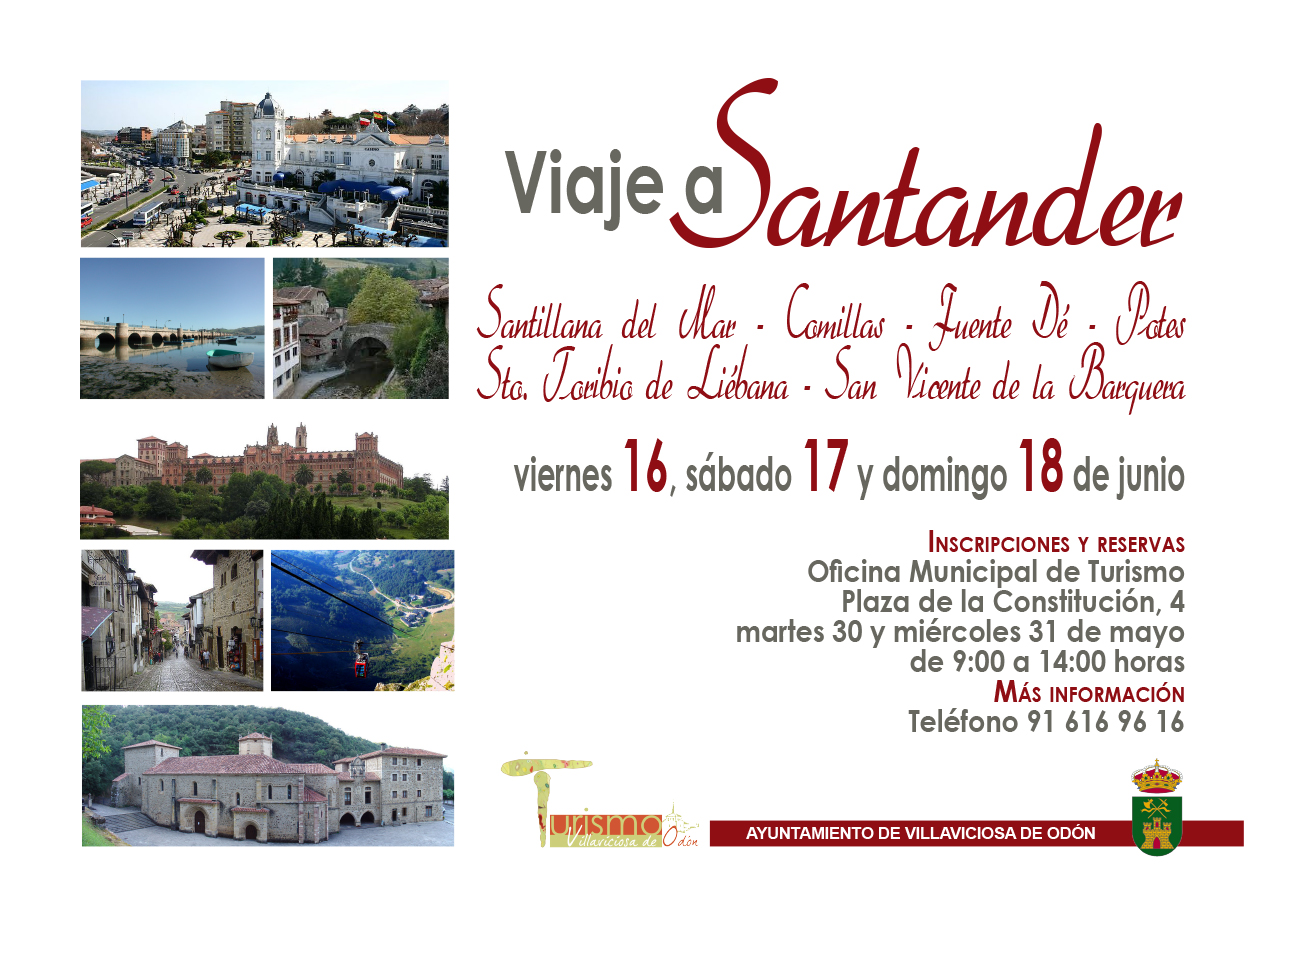 Inscripciones para el viaje a Cantabria del 16, 17 y 18 de junio